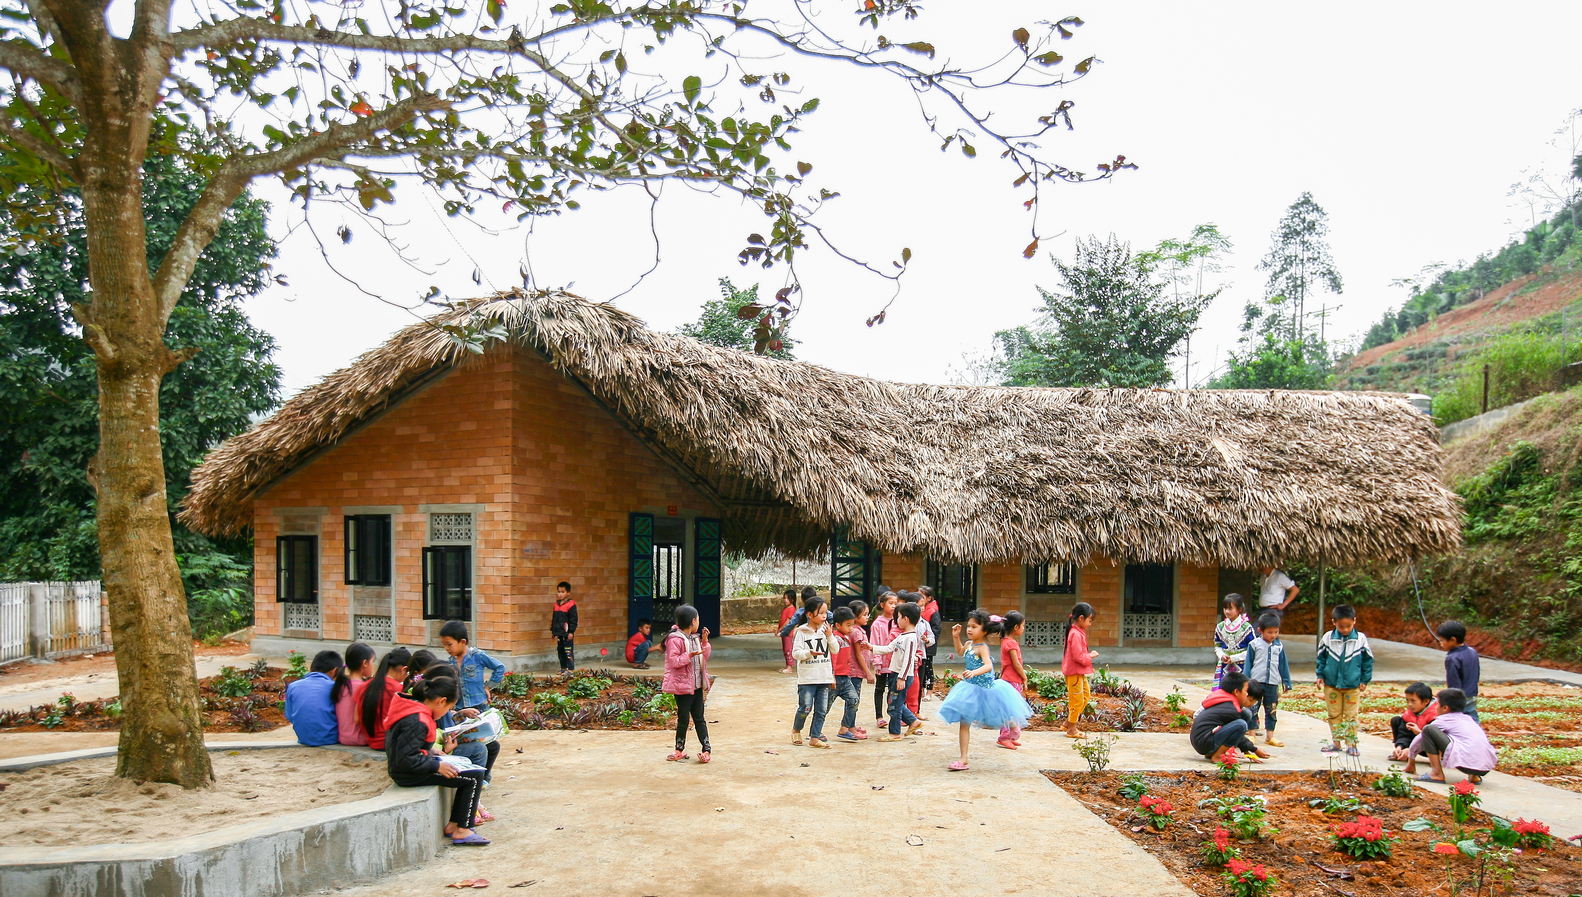 Hình ảnh toàn cảnh trường học mái lá, tường gạch đẹp ở Bảo Yên, Lào Cai